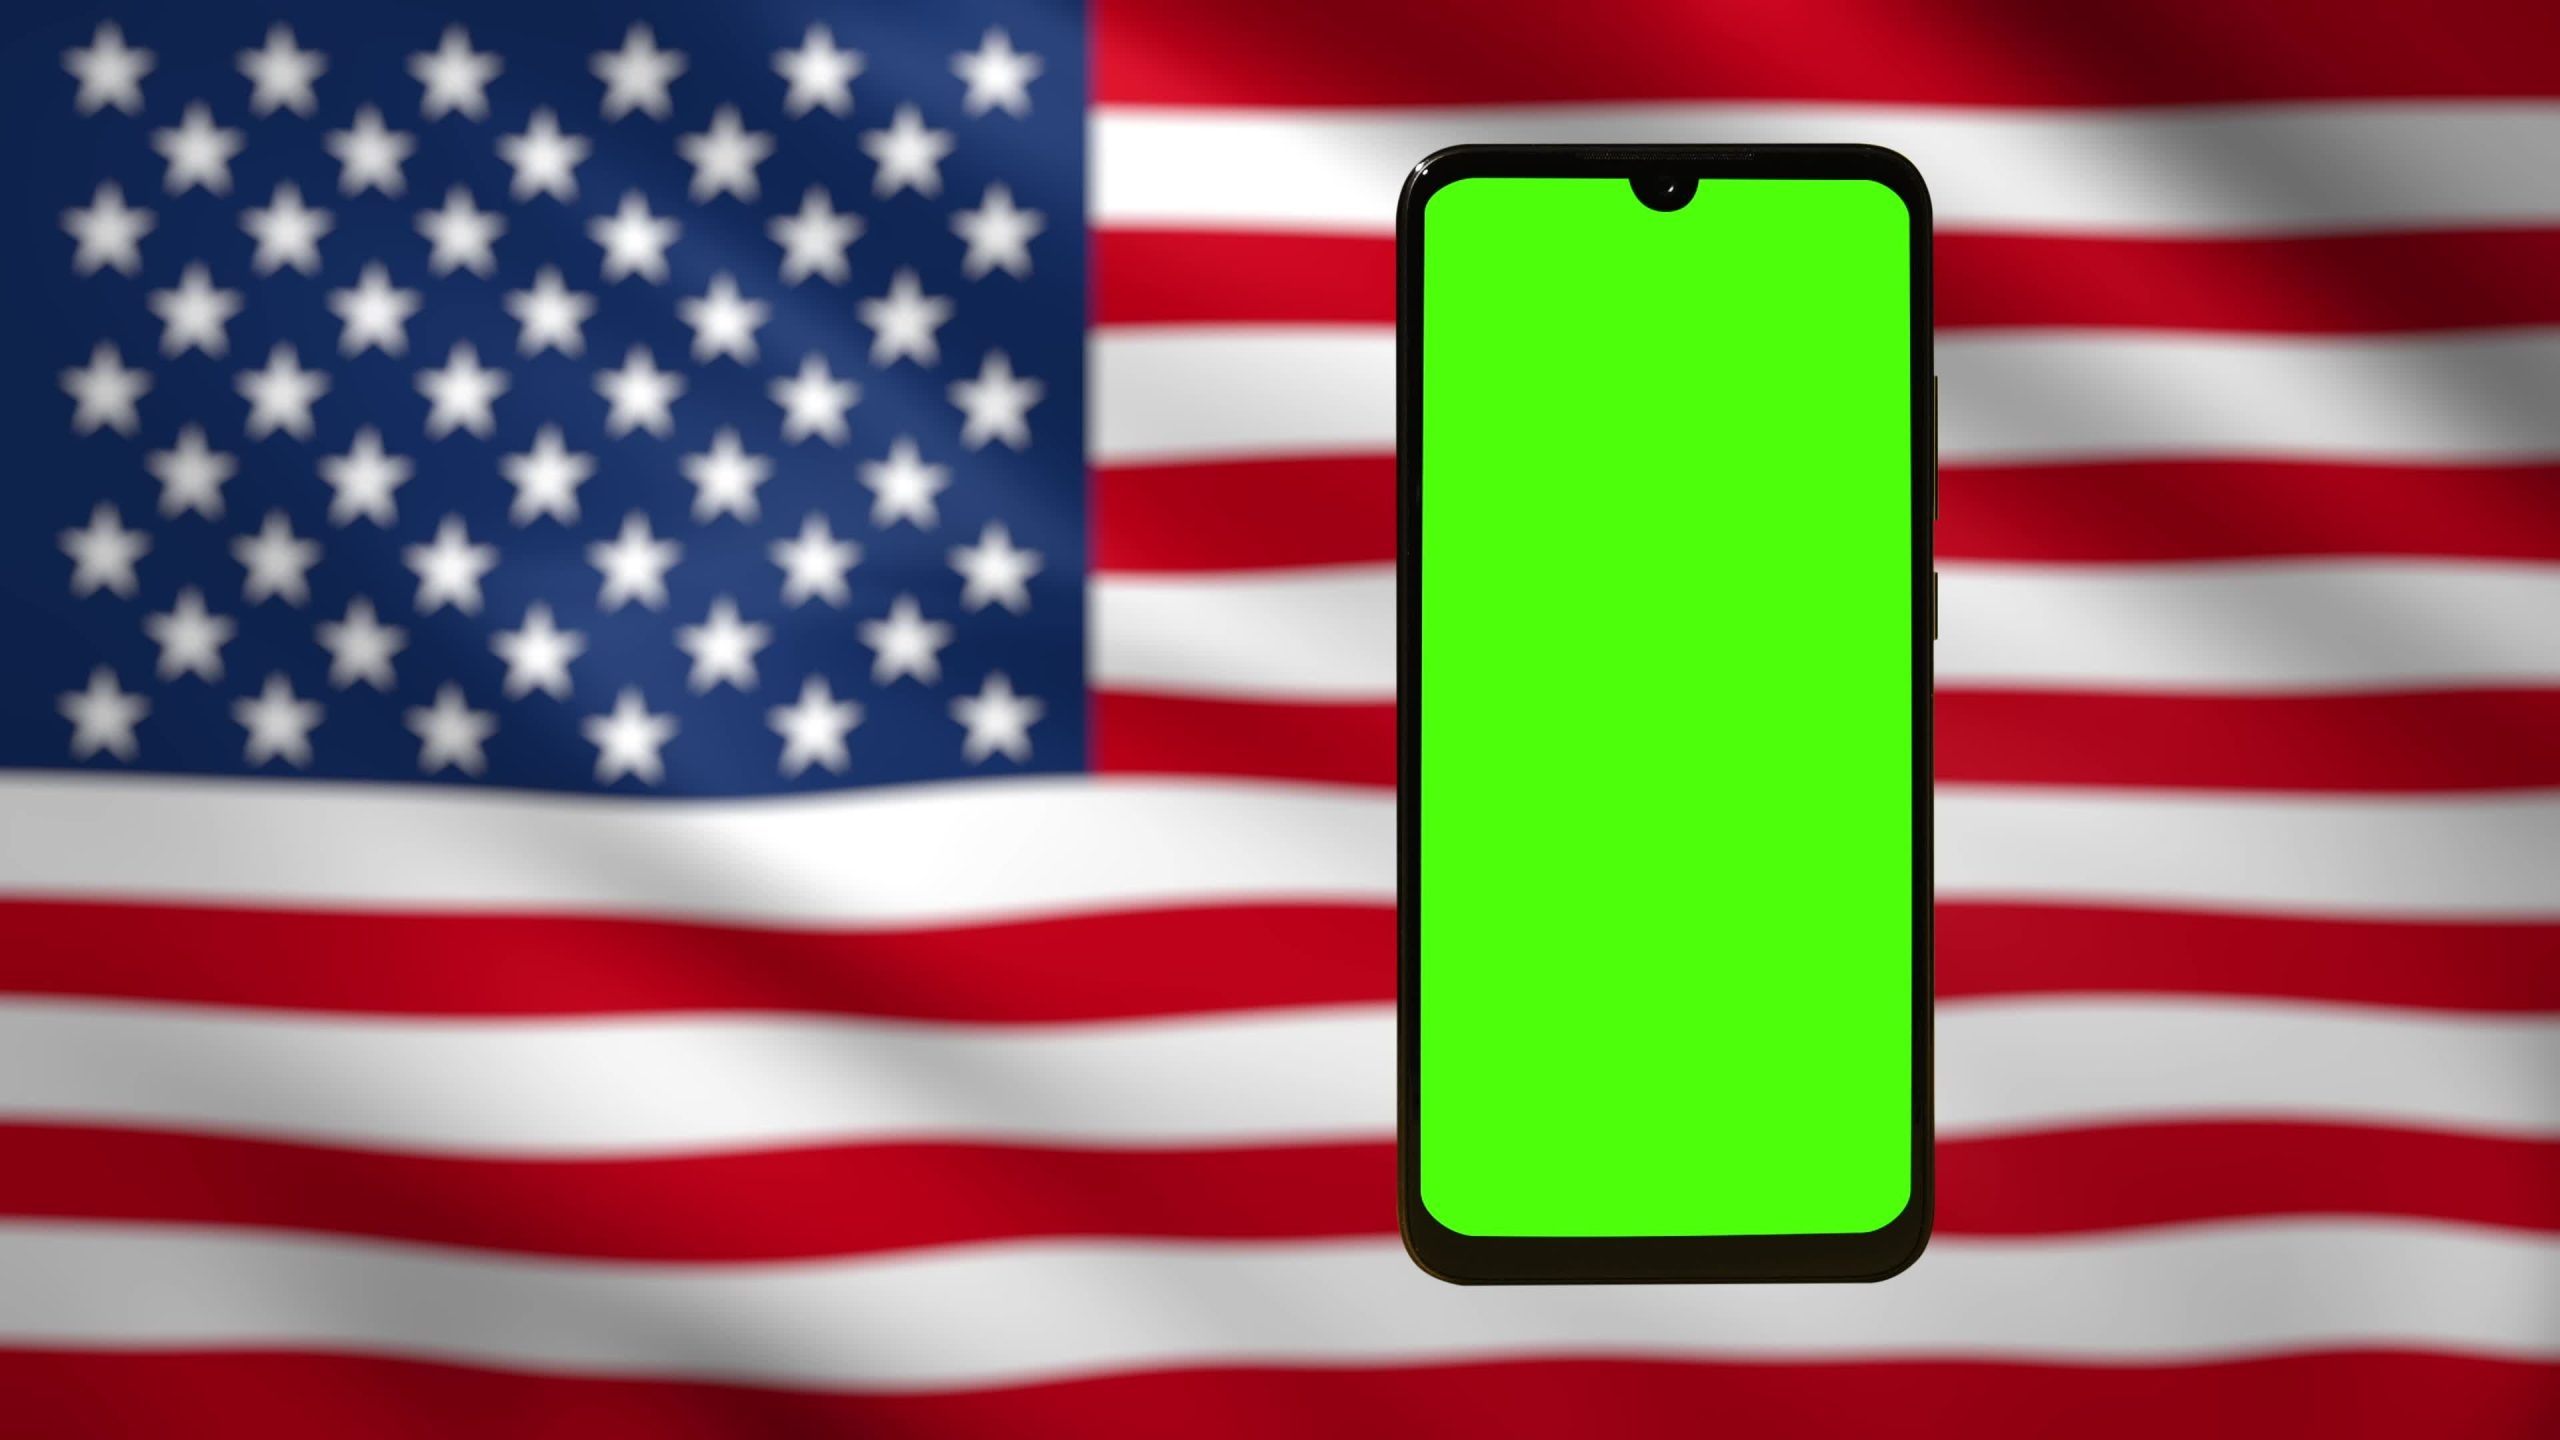 Telefono cellulare con schermo chromakey contro la bandiera americana